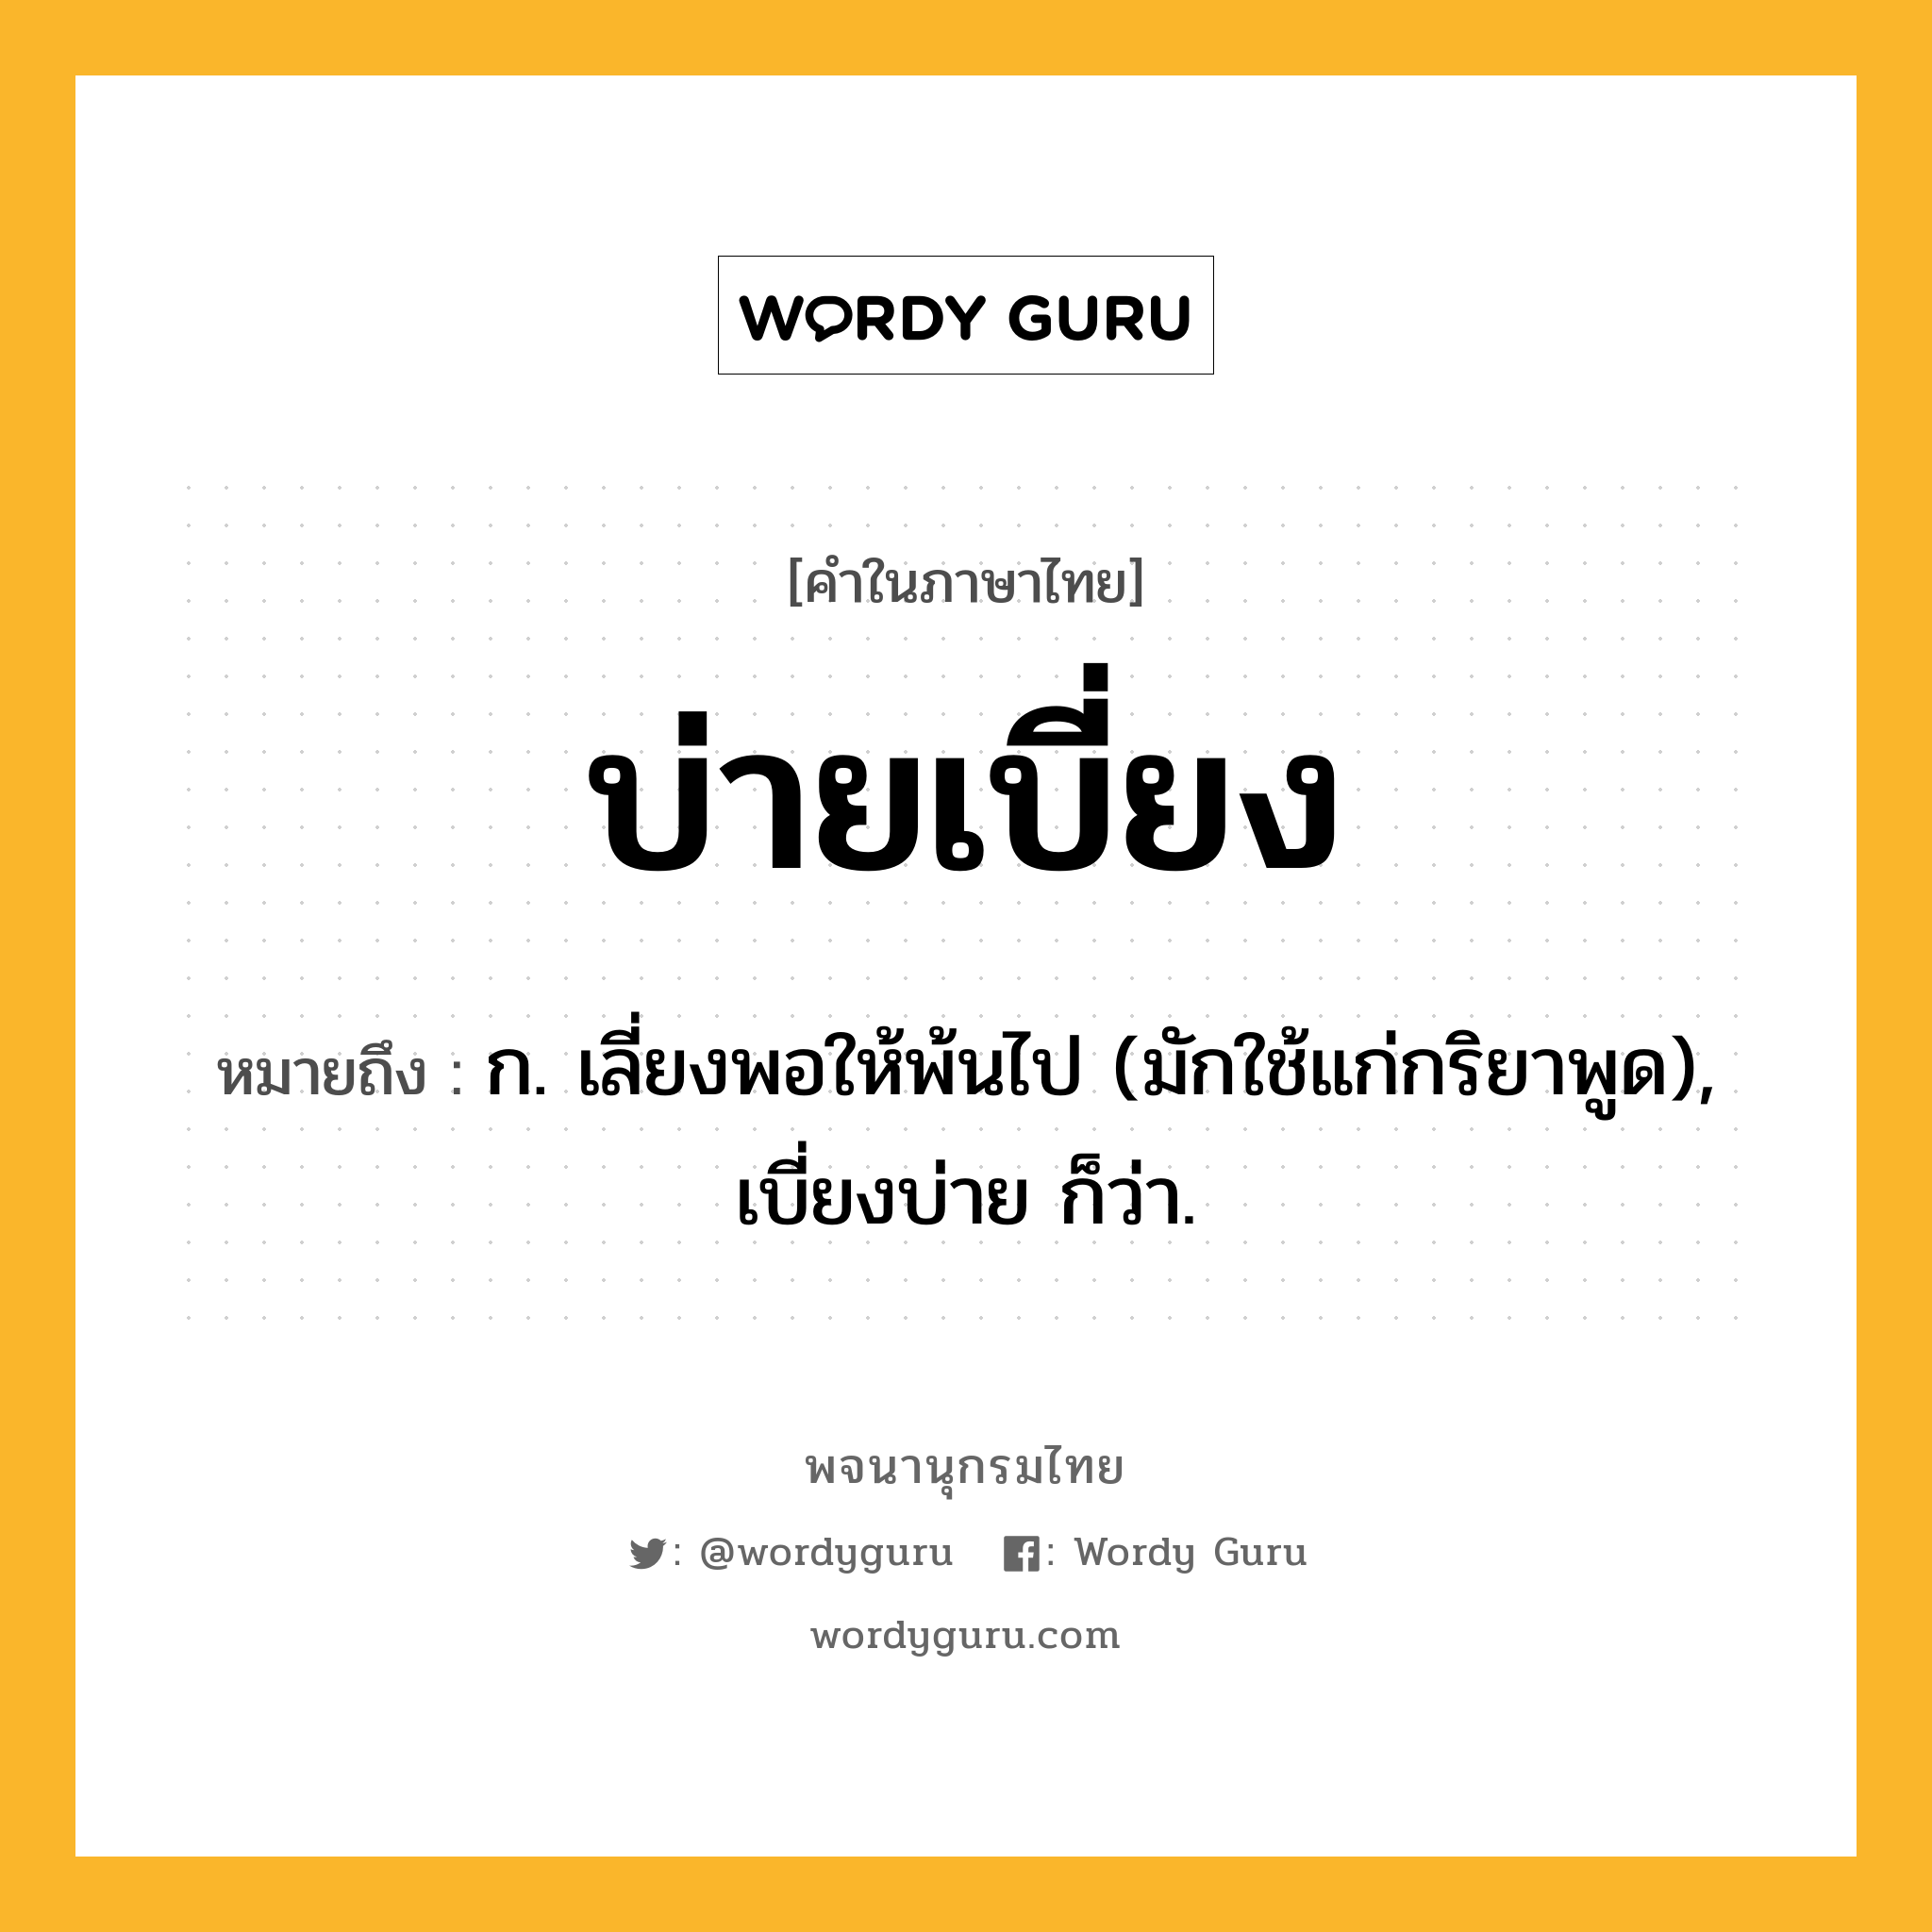 บ่ายเบี่ยง หมายถึงอะไร?, คำในภาษาไทย บ่ายเบี่ยง หมายถึง ก. เลี่ยงพอให้พ้นไป (มักใช้แก่กริยาพูด), เบี่ยงบ่าย ก็ว่า.